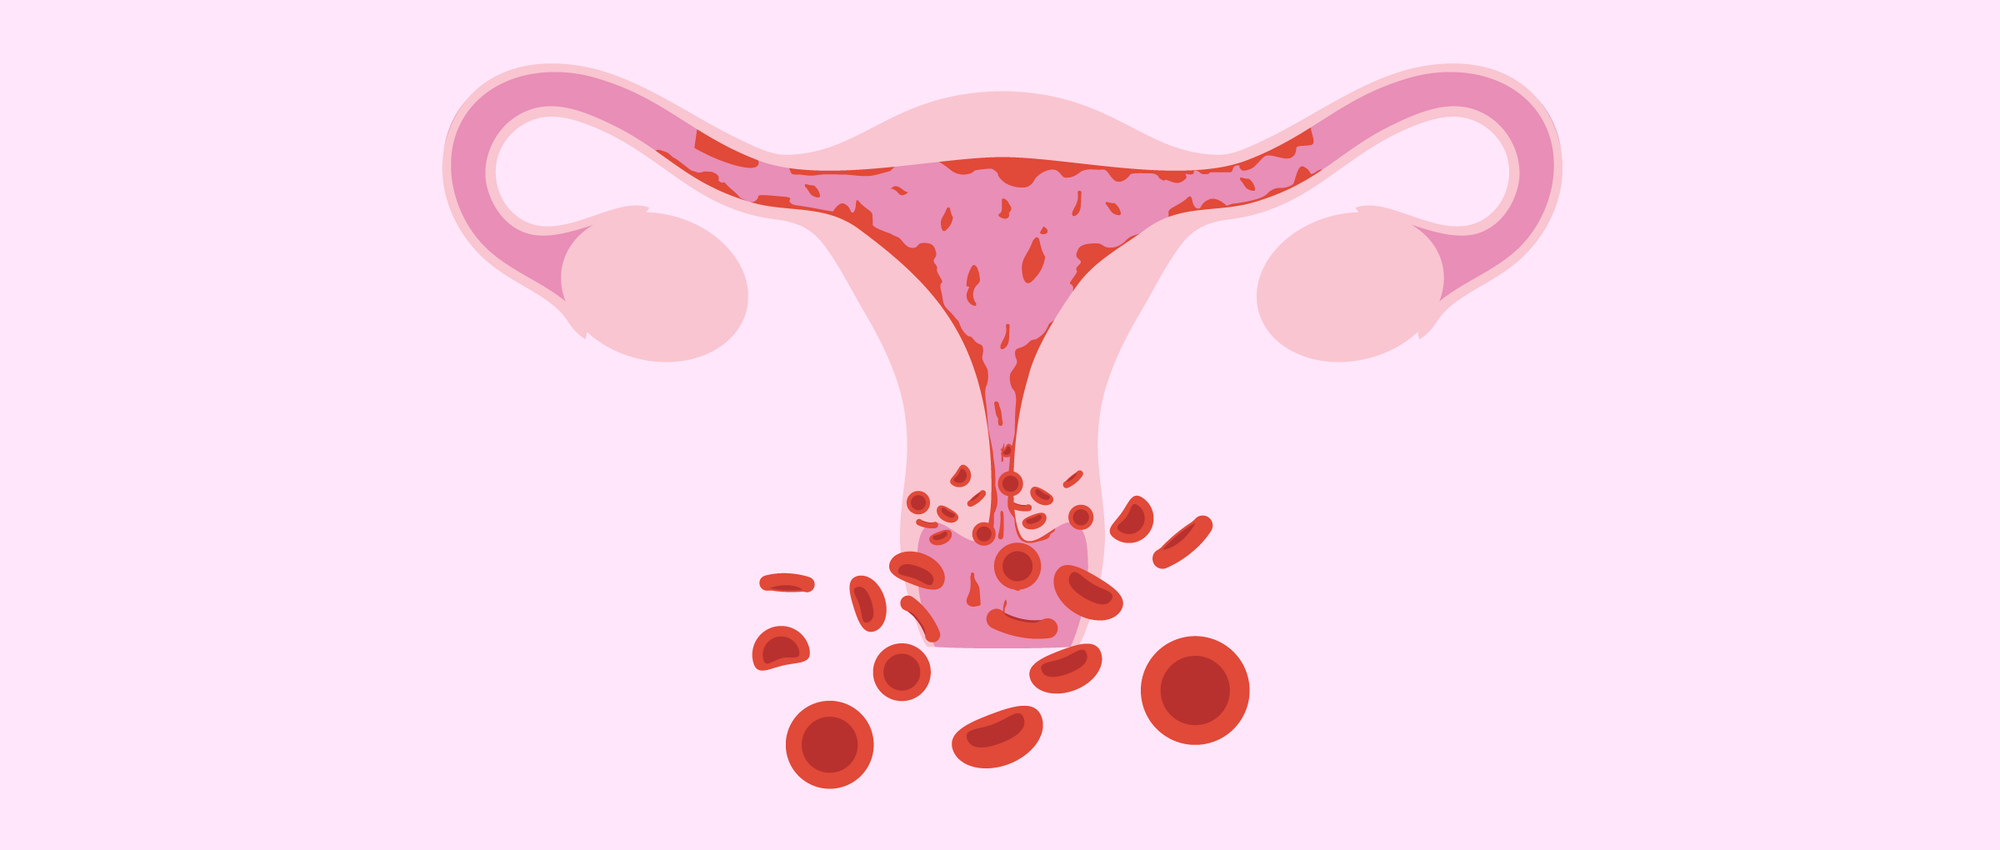 Ung thư cổ tử cung là gì?